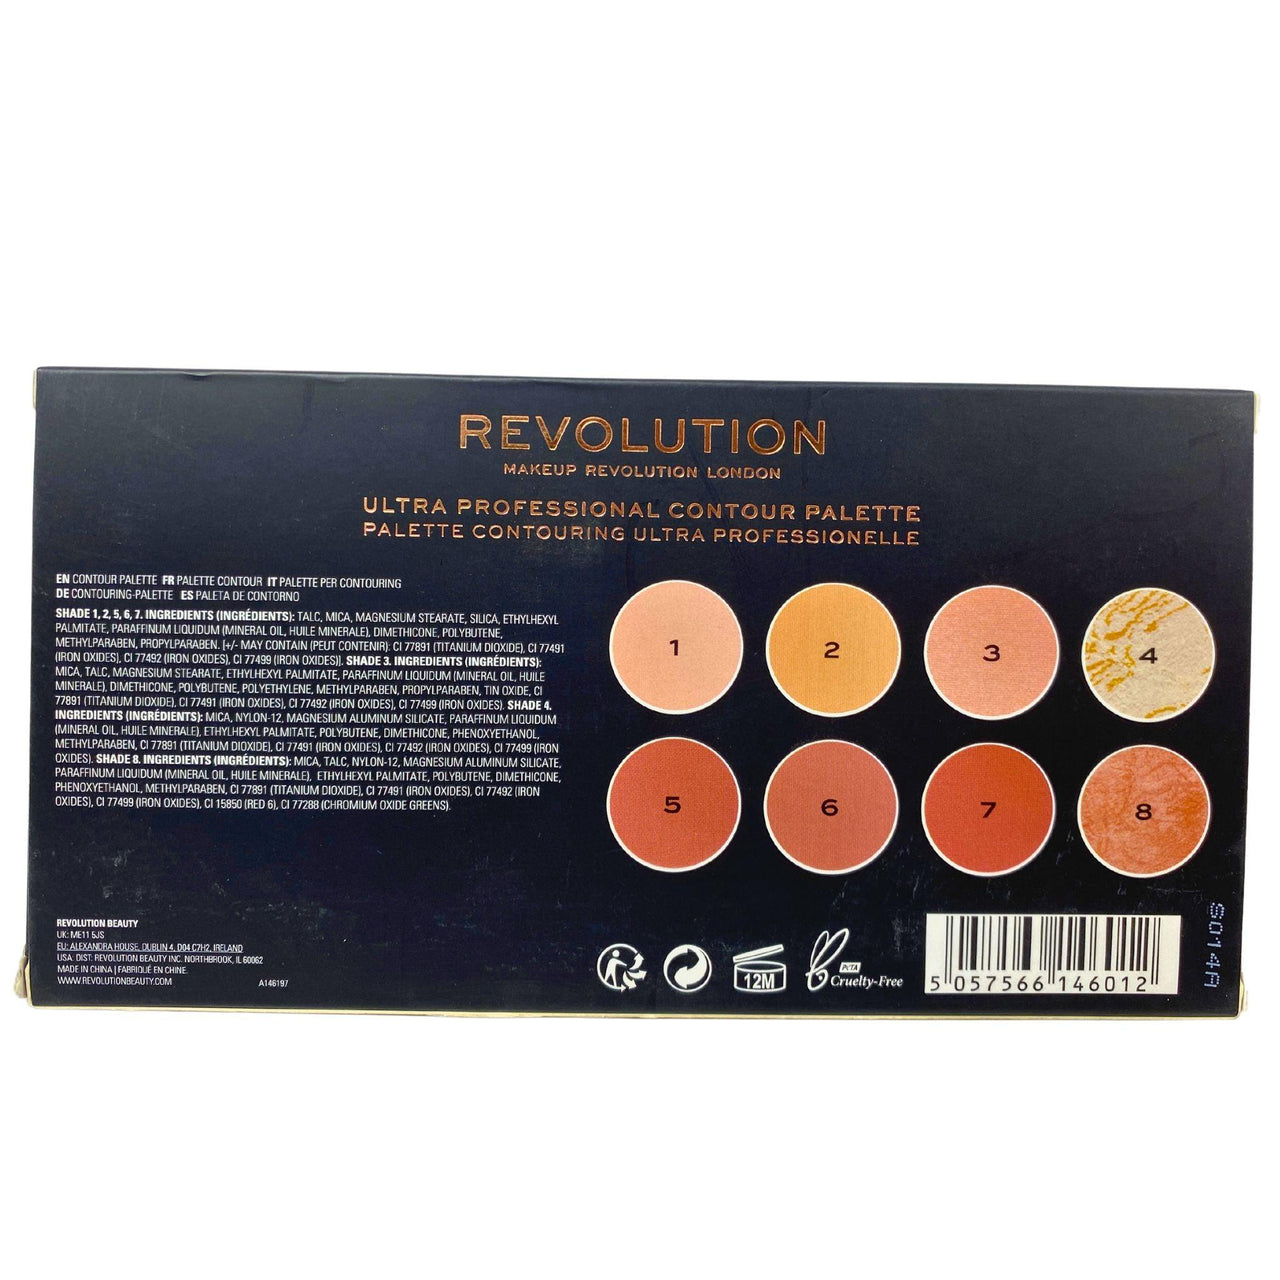 Revolution Ultra Contour Ultra Professional Contour Palette (50 Pcs Lot) - Discount Wholesalers Inc